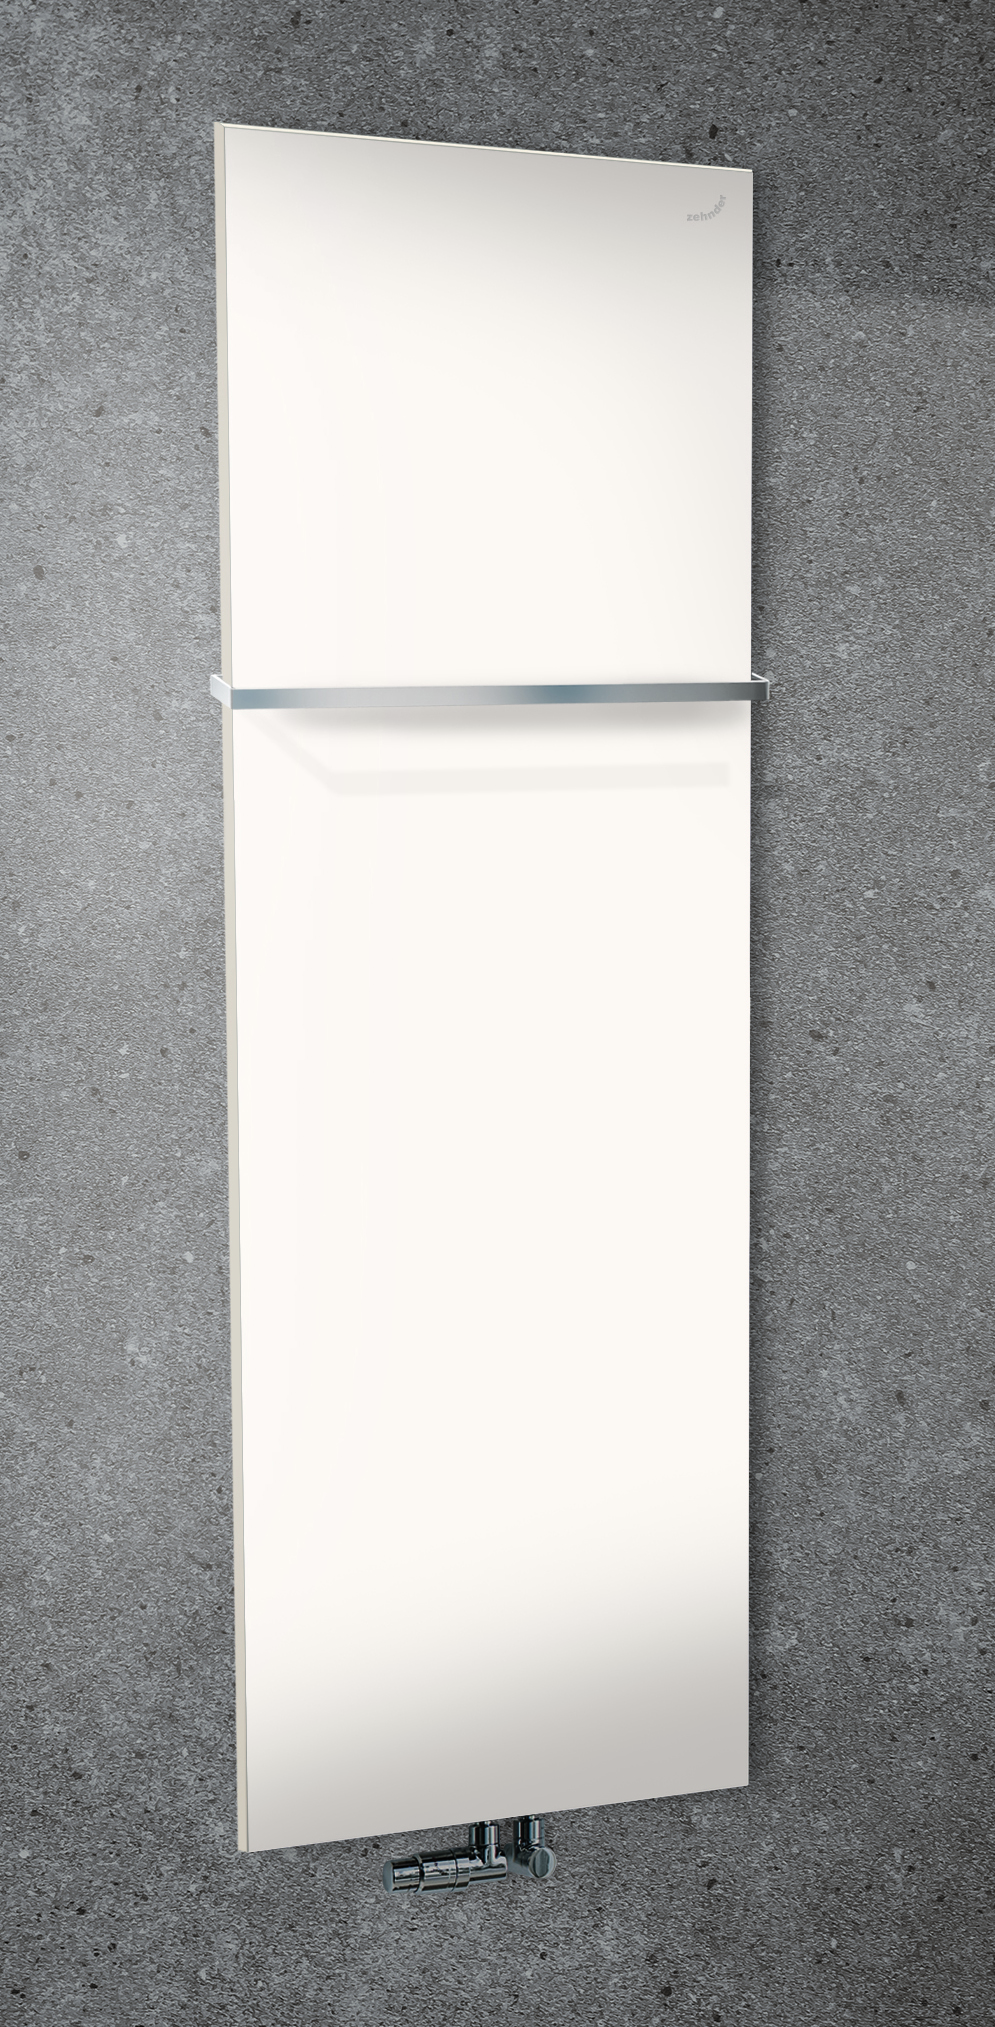 Zehnder Design-Heizkörper „Fina Lean Bar“ für Warmwasser-Zentralheizung mit 50 mm-Mittelanschluss 70 × 130 cm in Verkehrsweiß (RAL 9016, glänzend)